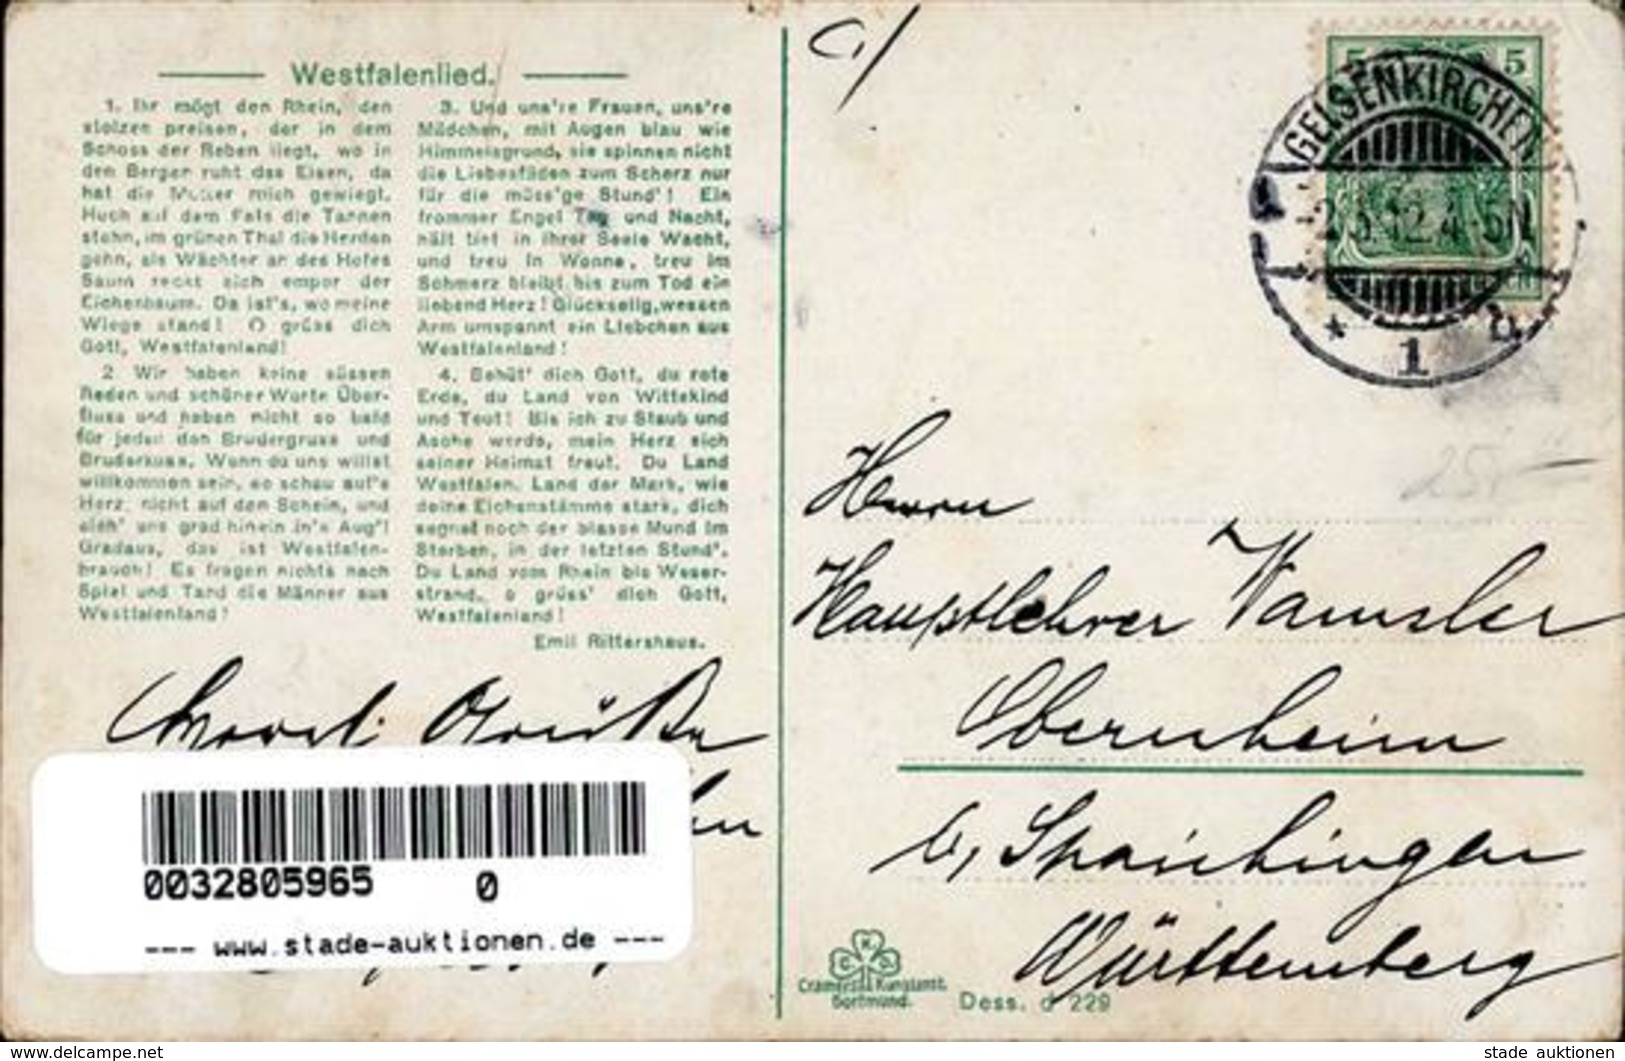 Alkoholwerbung Steinhäger Ein Frühstück Im Westfalenlande Werbe AK 1912 I-II (Eckbug) - Publicité